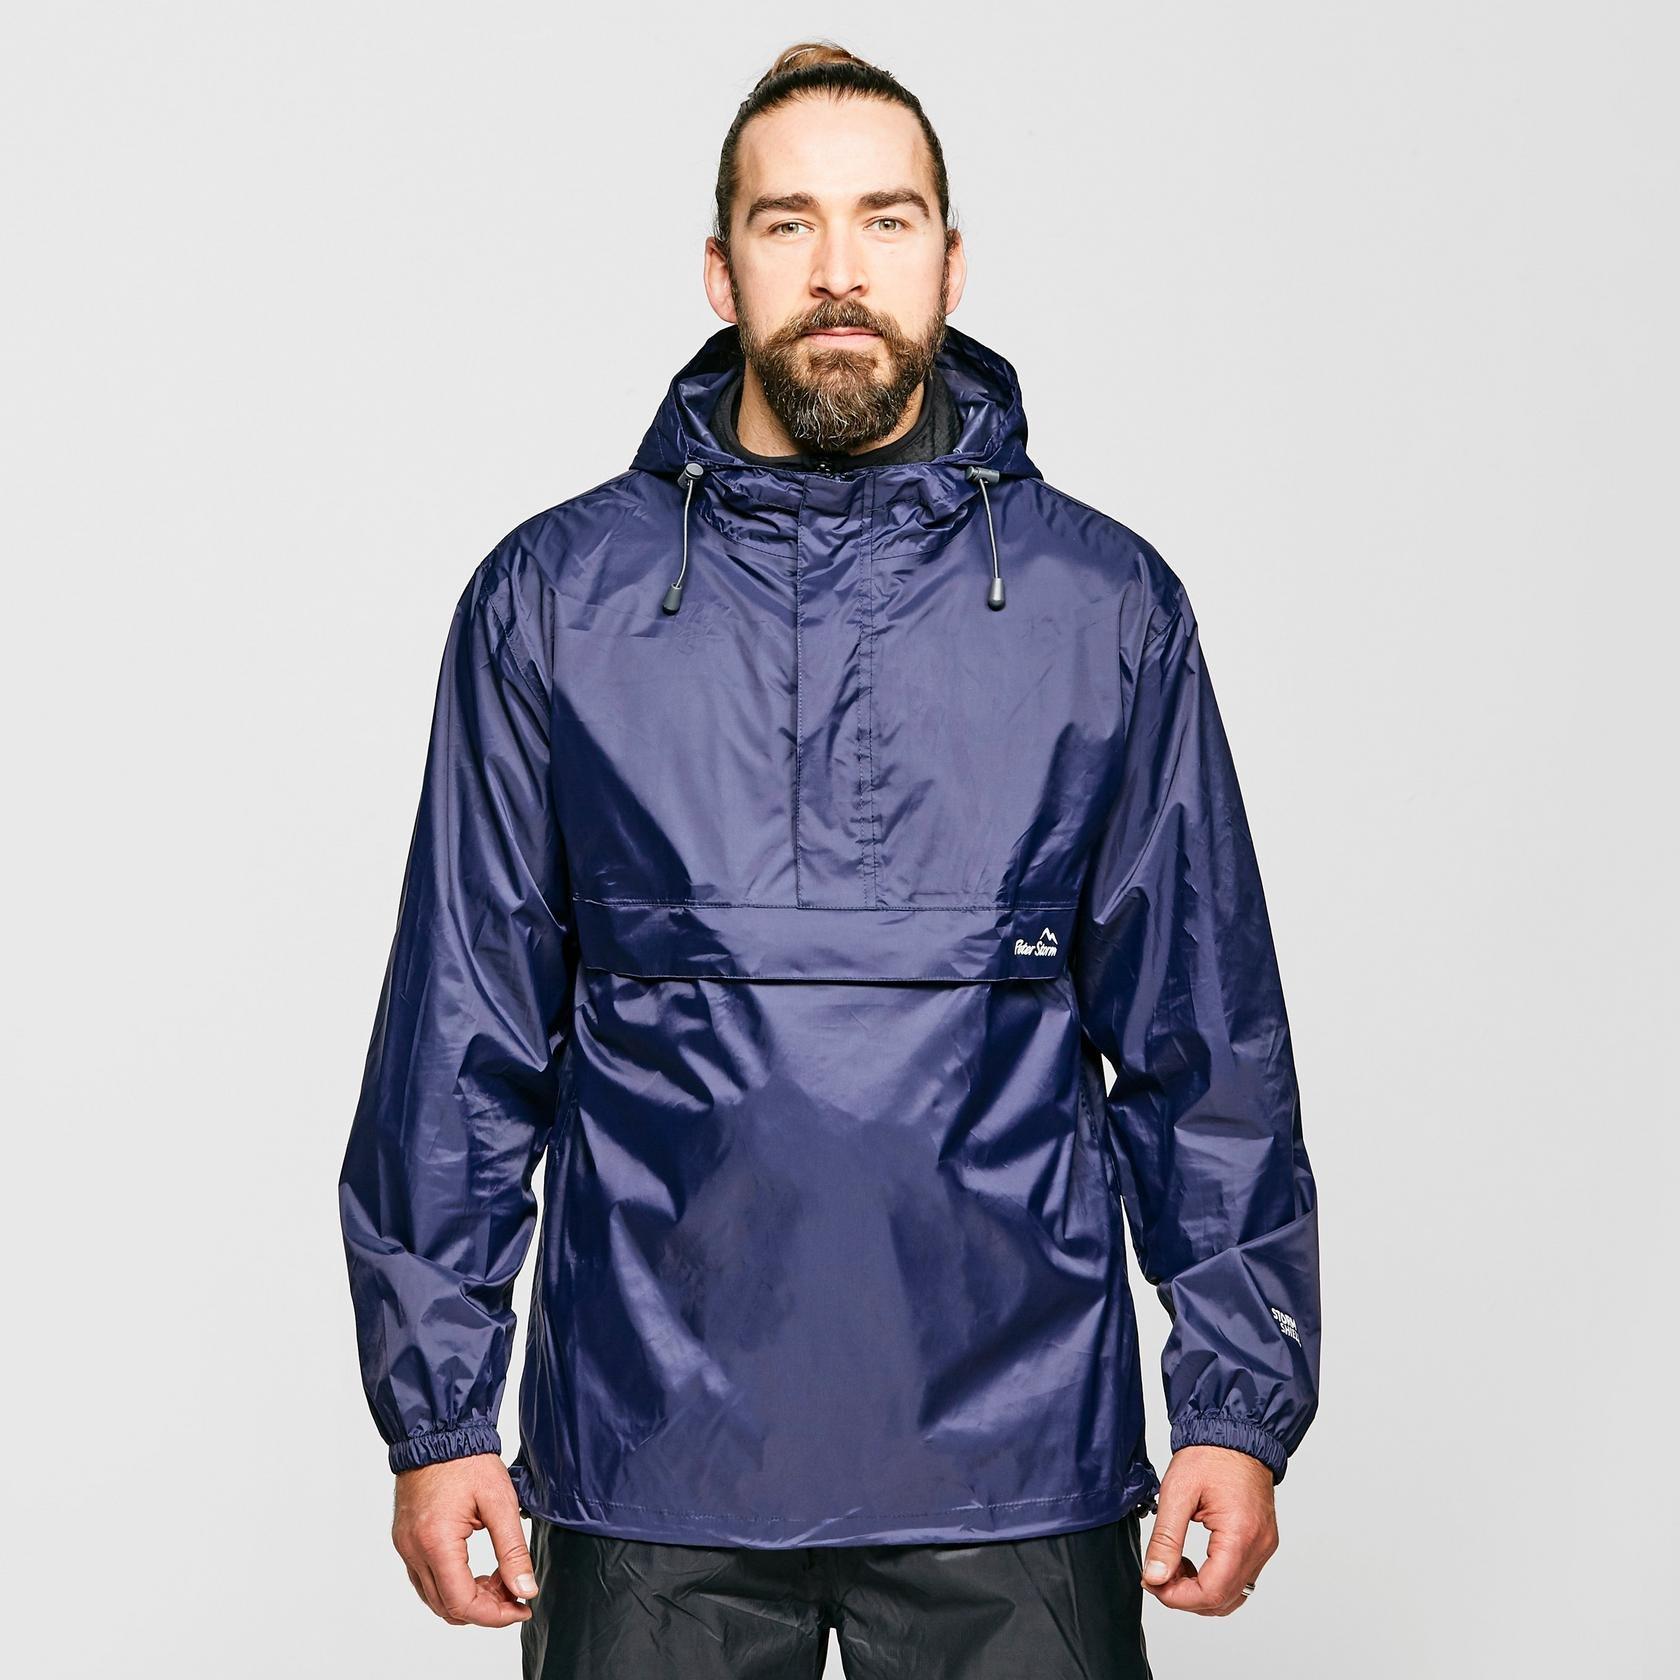 Men's Packable Cagoule, Waterproof Jackets